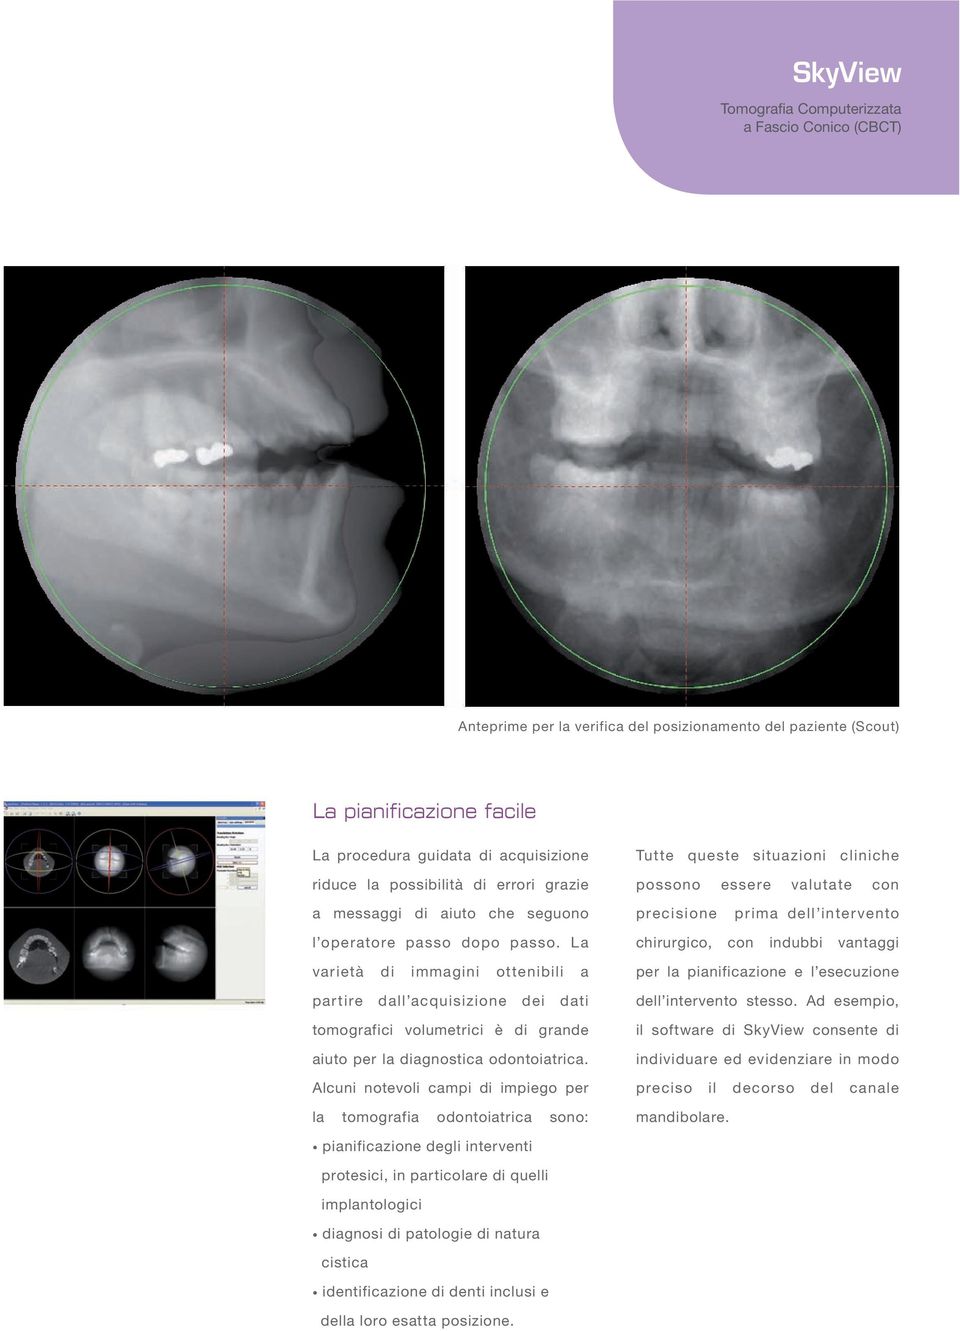 La varietà di immagini ottenibili a partire dall acquisizione dei dati tomografici volumetrici è di grande aiuto per la diagnostica odontoiatrica.